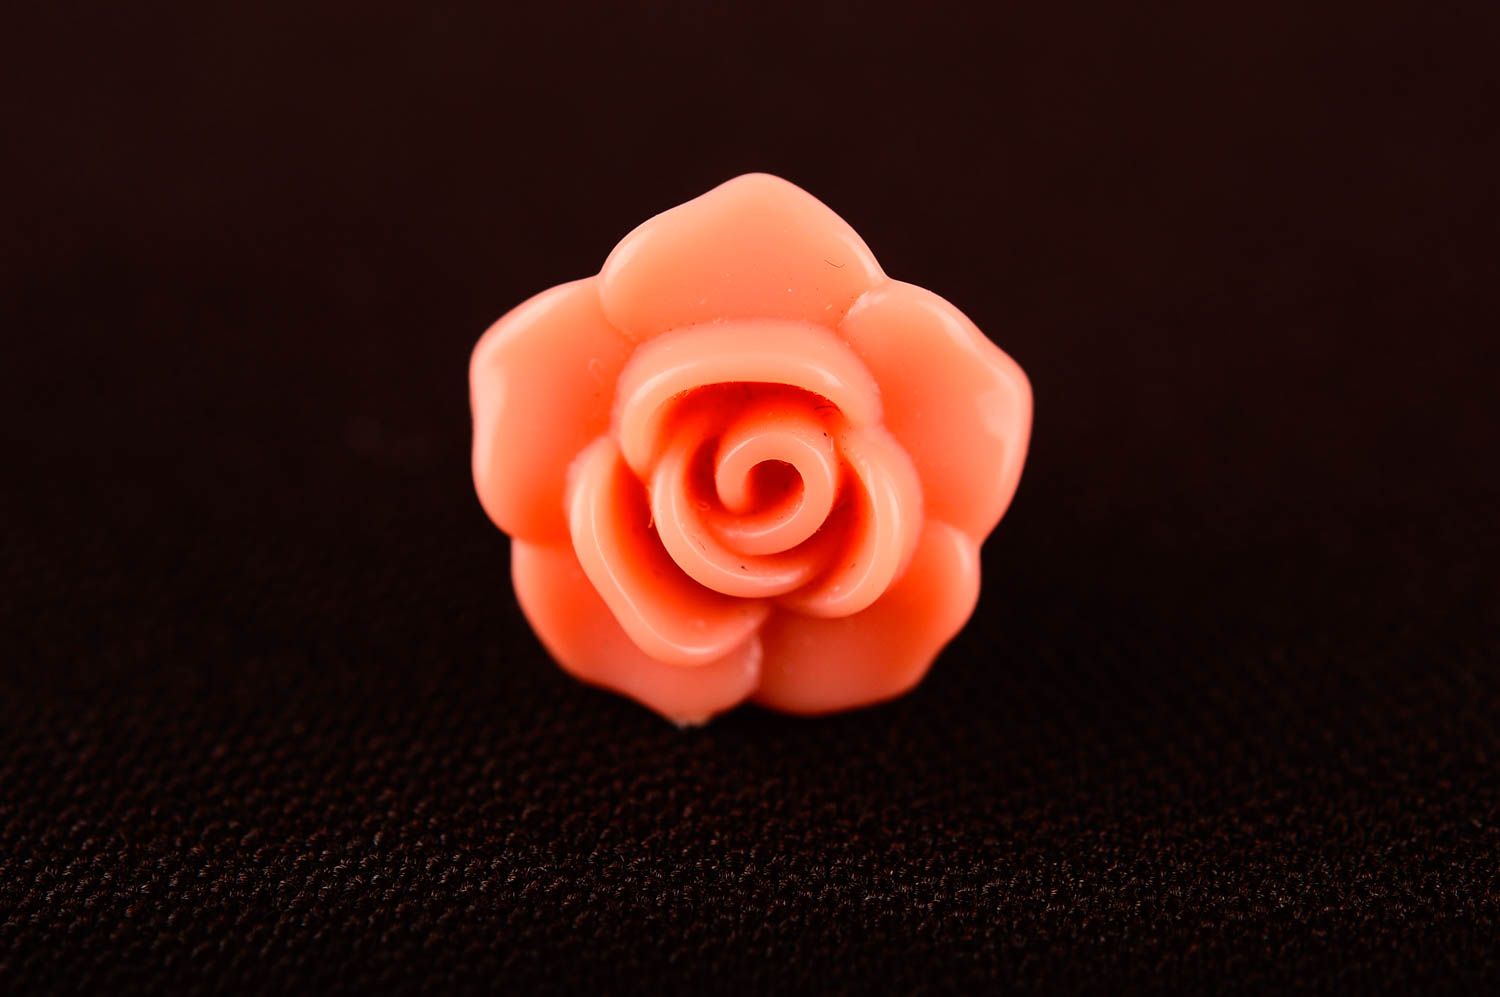 Красивые серьги хэнд мэйд персиковые серьги бижутерия украшение из пластика фото 3